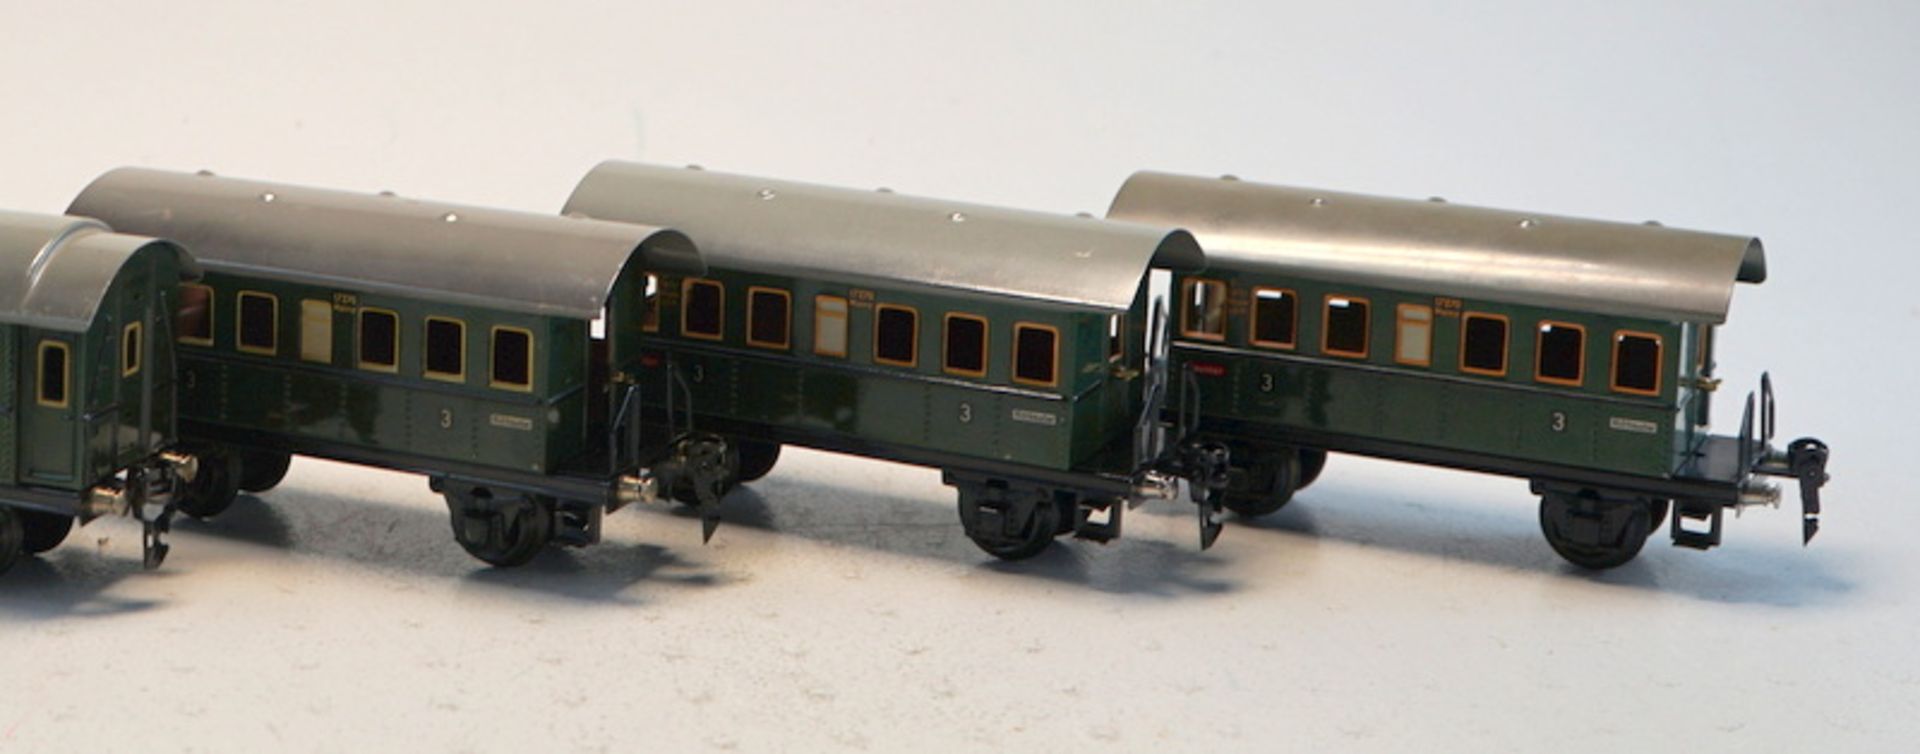 Märklin 1929ff, Gebr. Märklin & Cie., G.m.b.H. Göppingen: 4 baugleiche märklin-Personenwagen + passe - Bild 2 aus 3